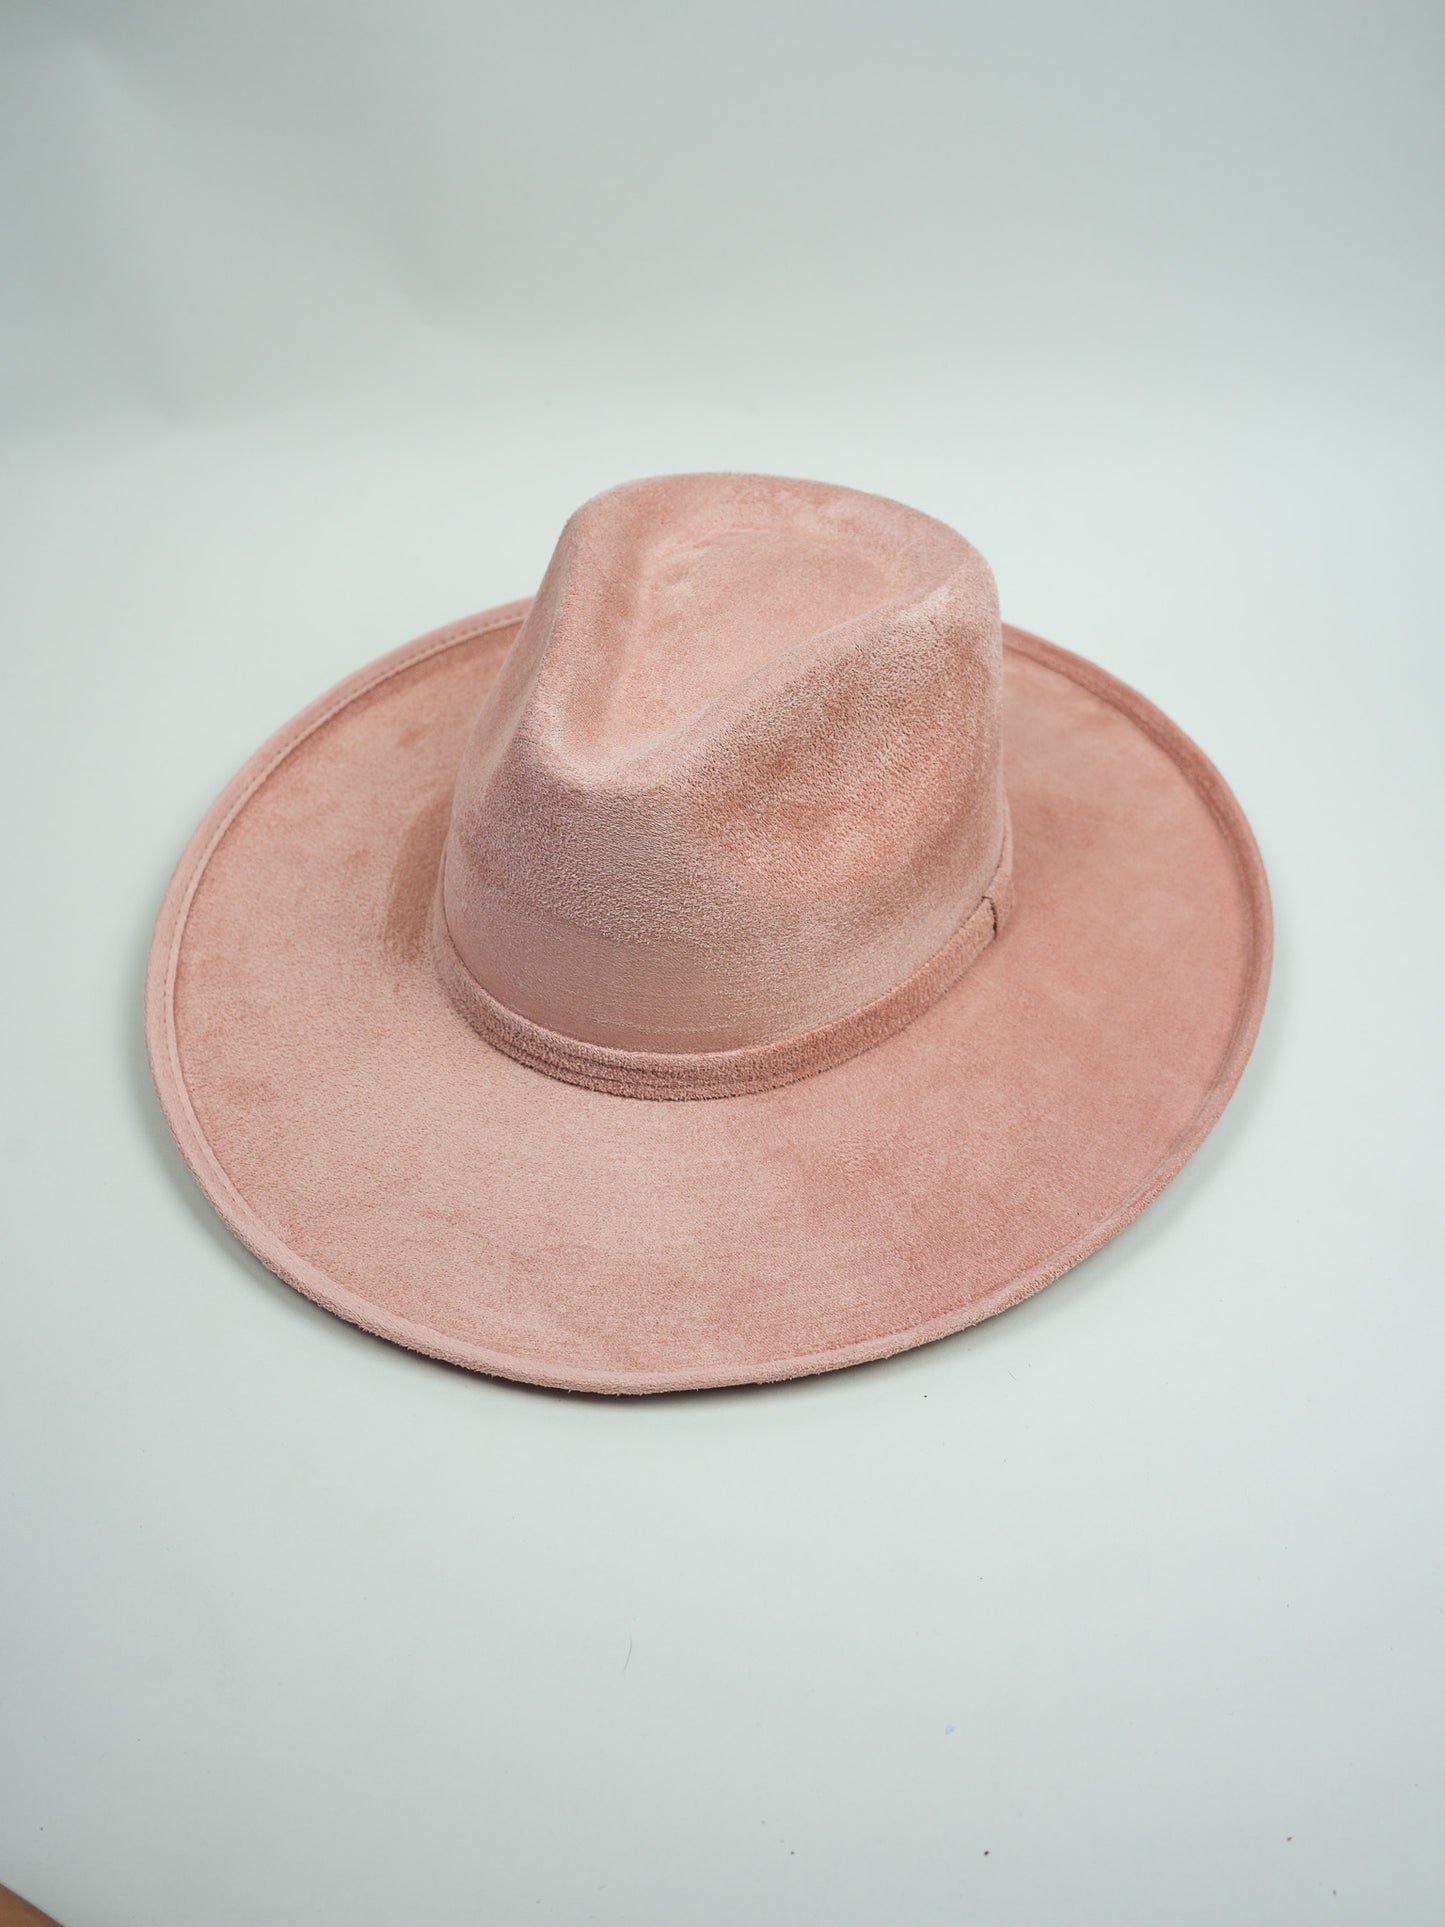 Vegan Suede Rancher Hat - Pencil Brim - Pale Dusty Rose